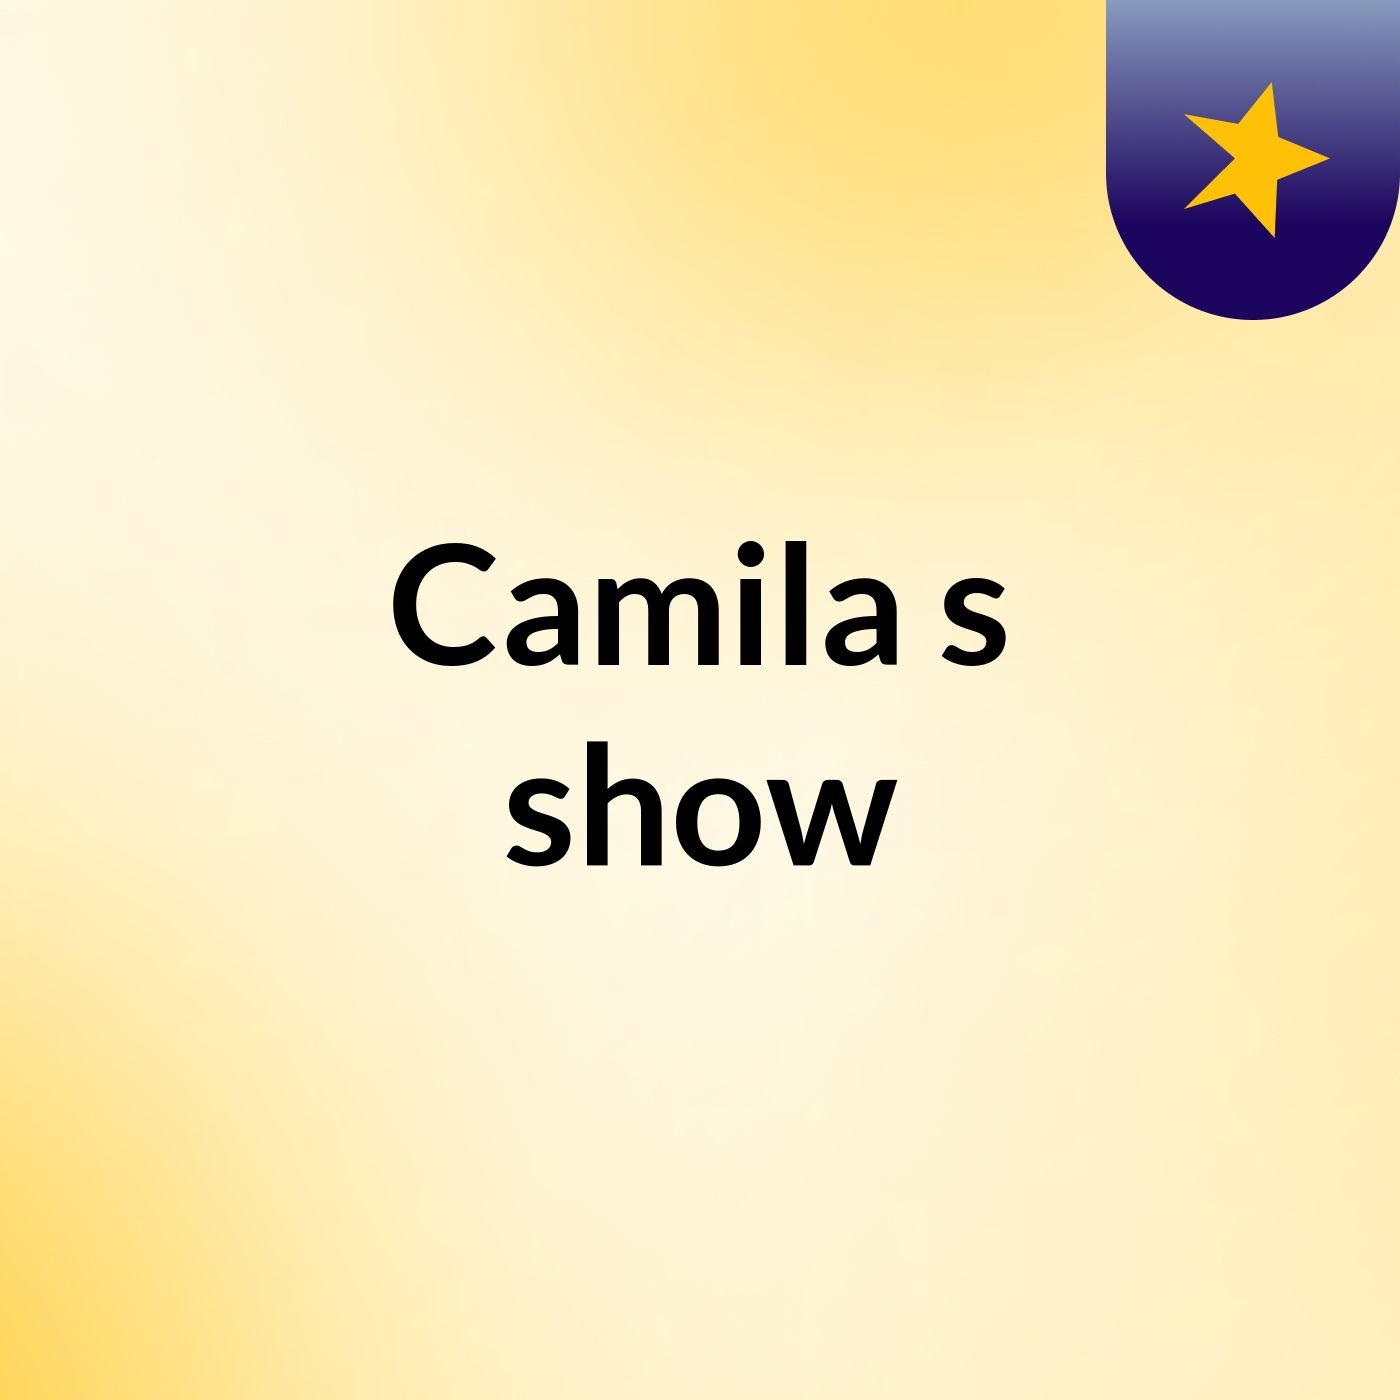 Camila's show